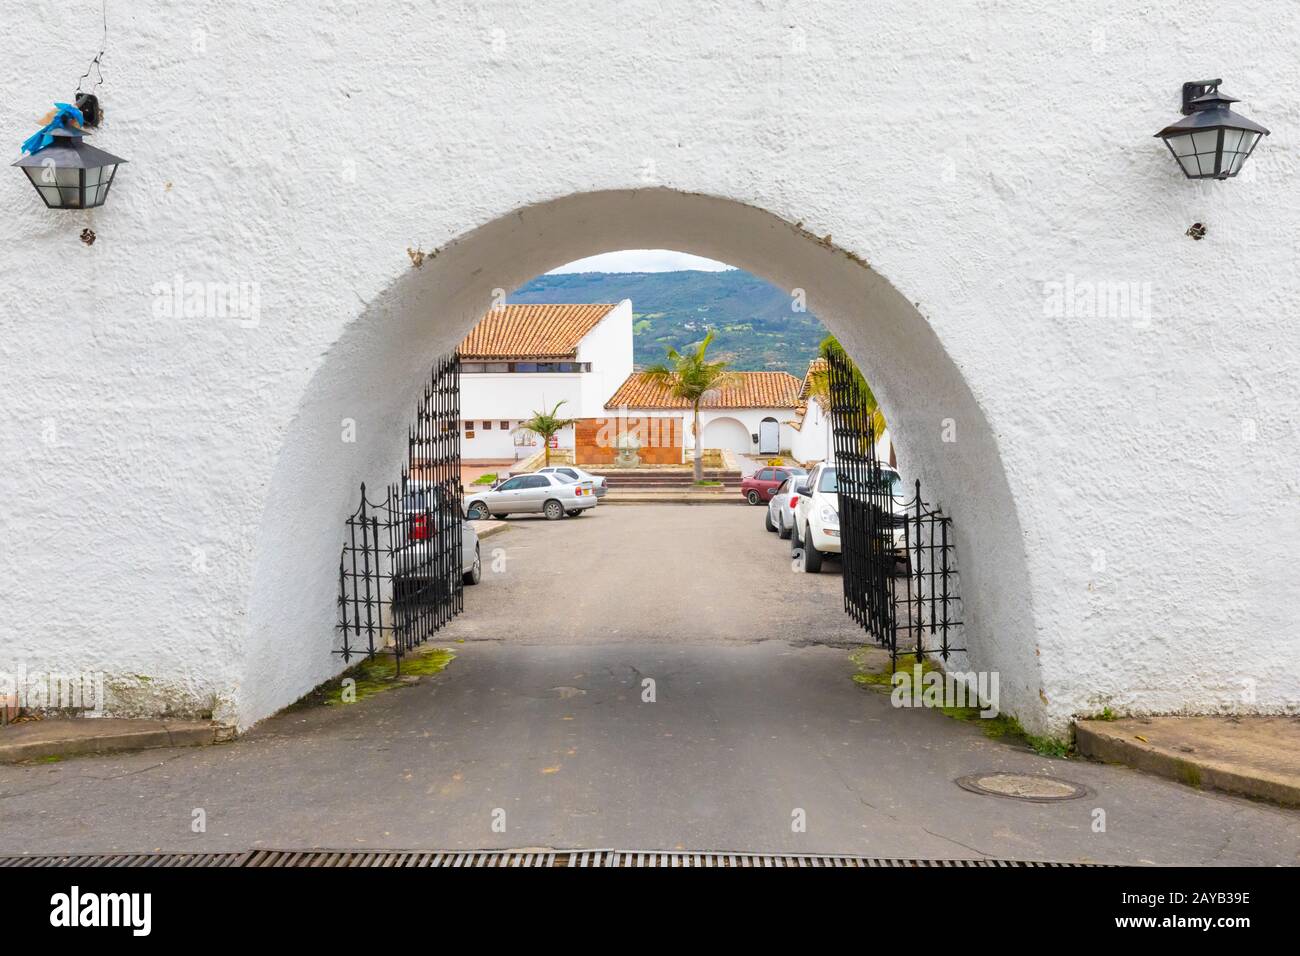 Colombia Guatavita entrance arch of the historic center Stock Photo